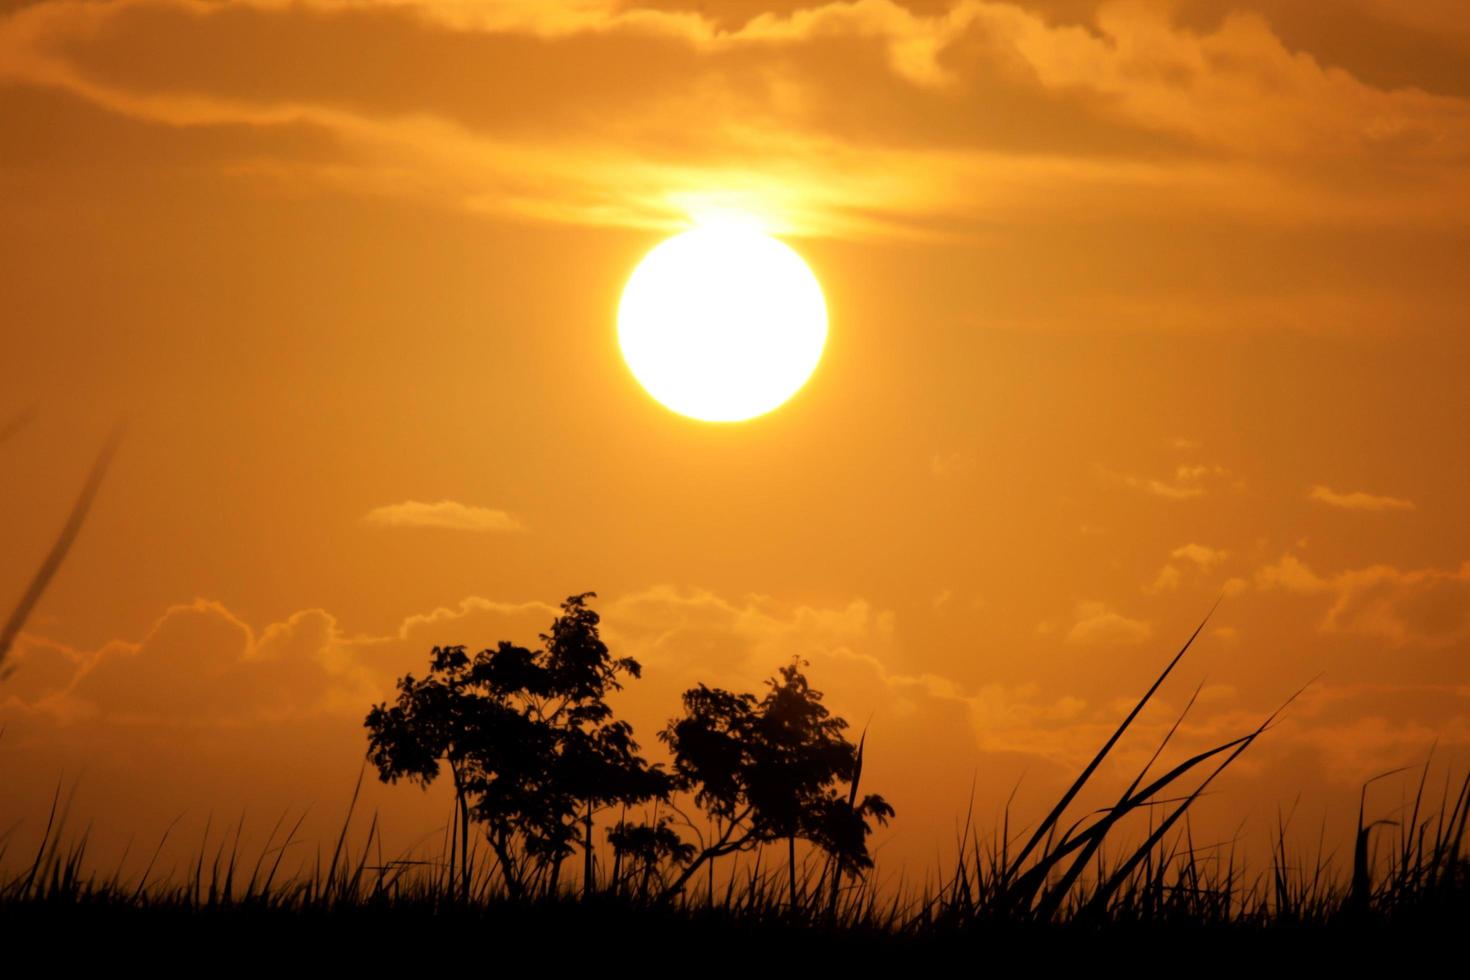 campos dos goytacazes, rj, brasil, 2021 - puesta de sol en el campo de campos foto